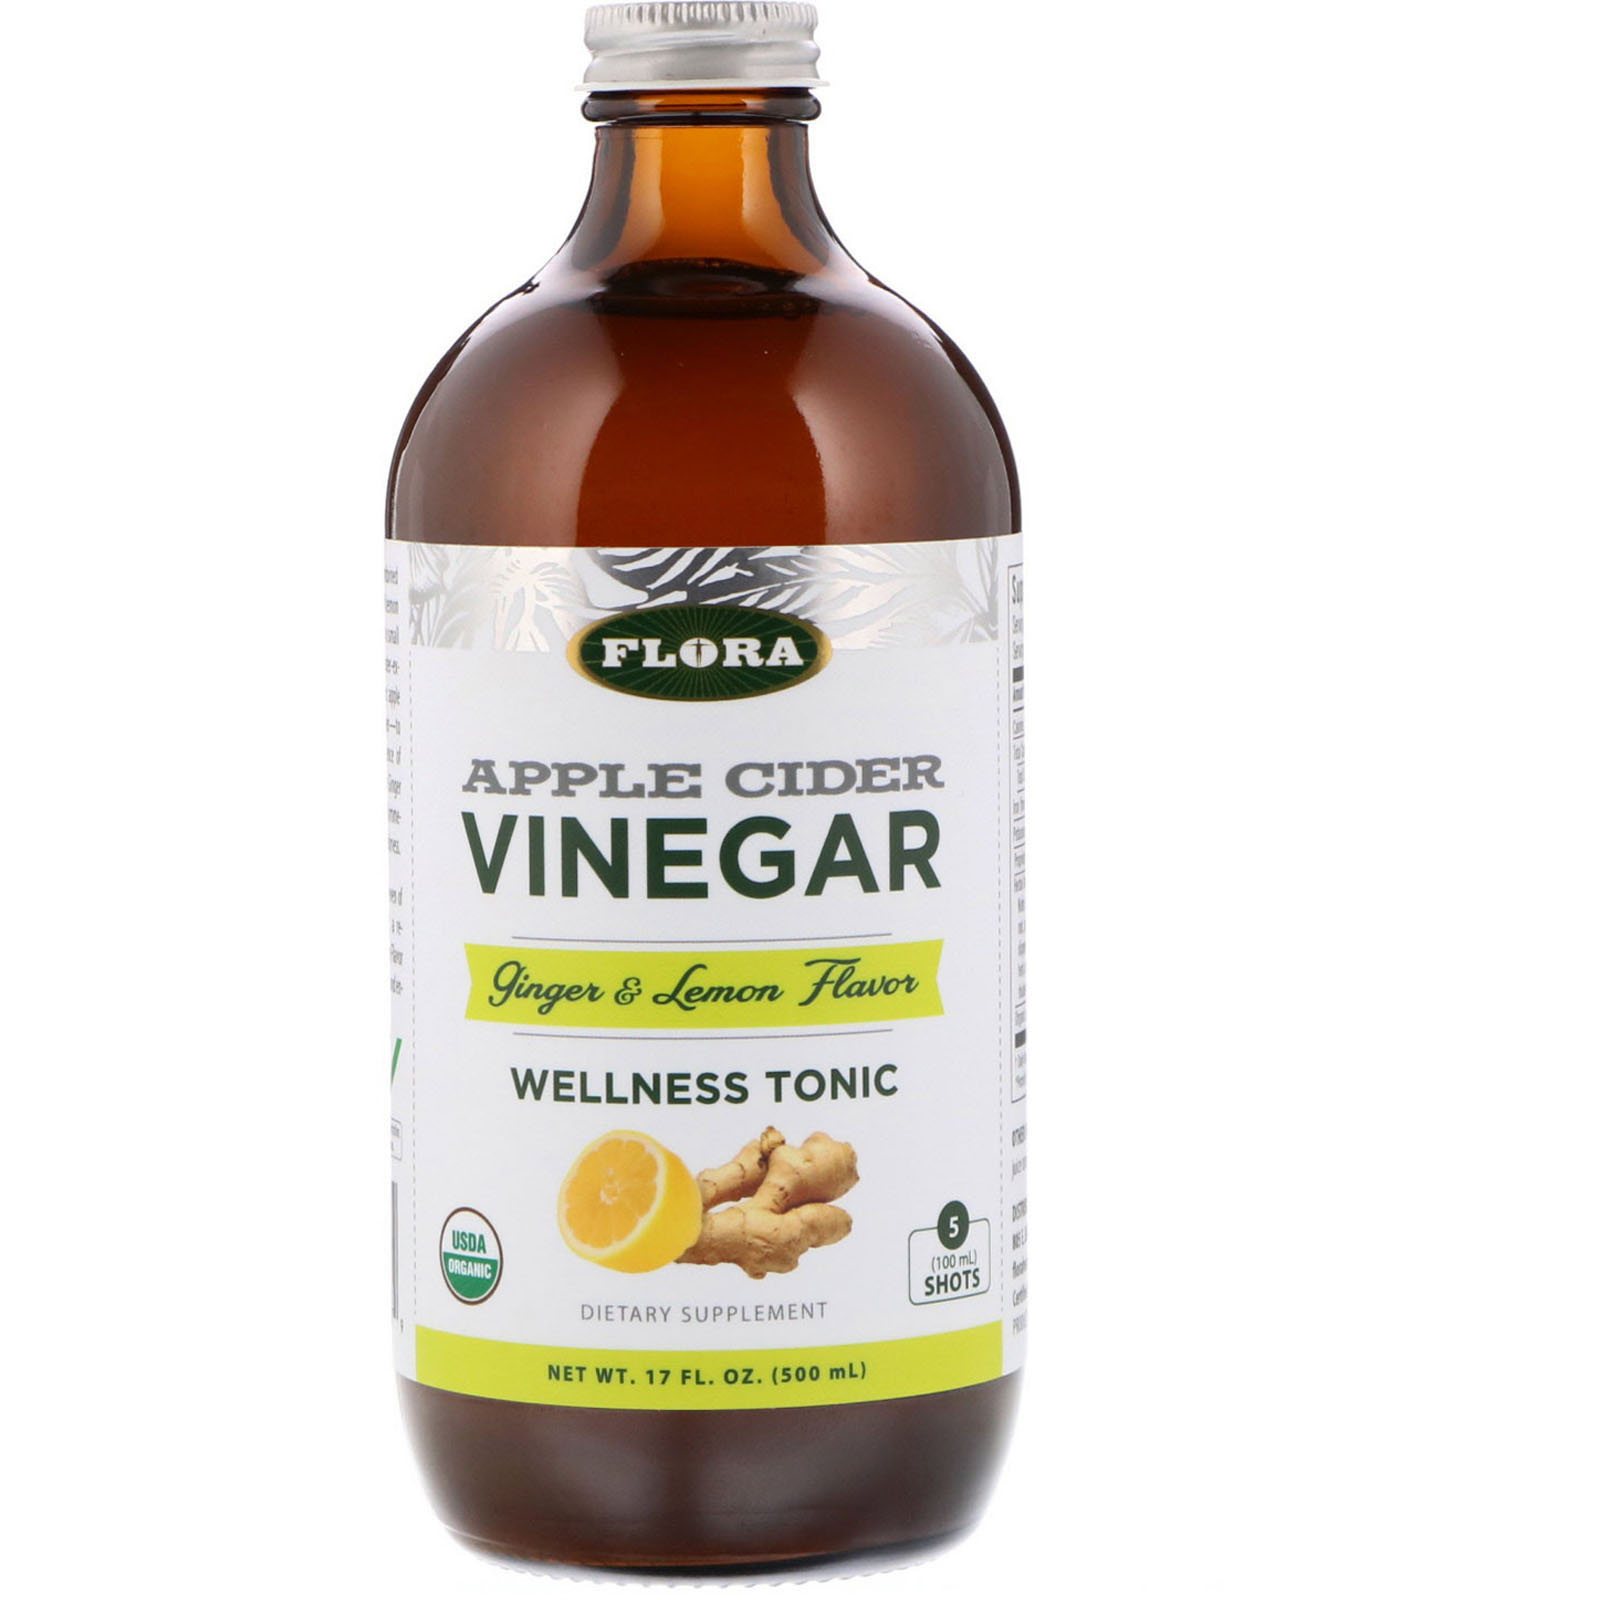 apple cider vinegar, wellness tonic, ginger & lemon flavor, 17